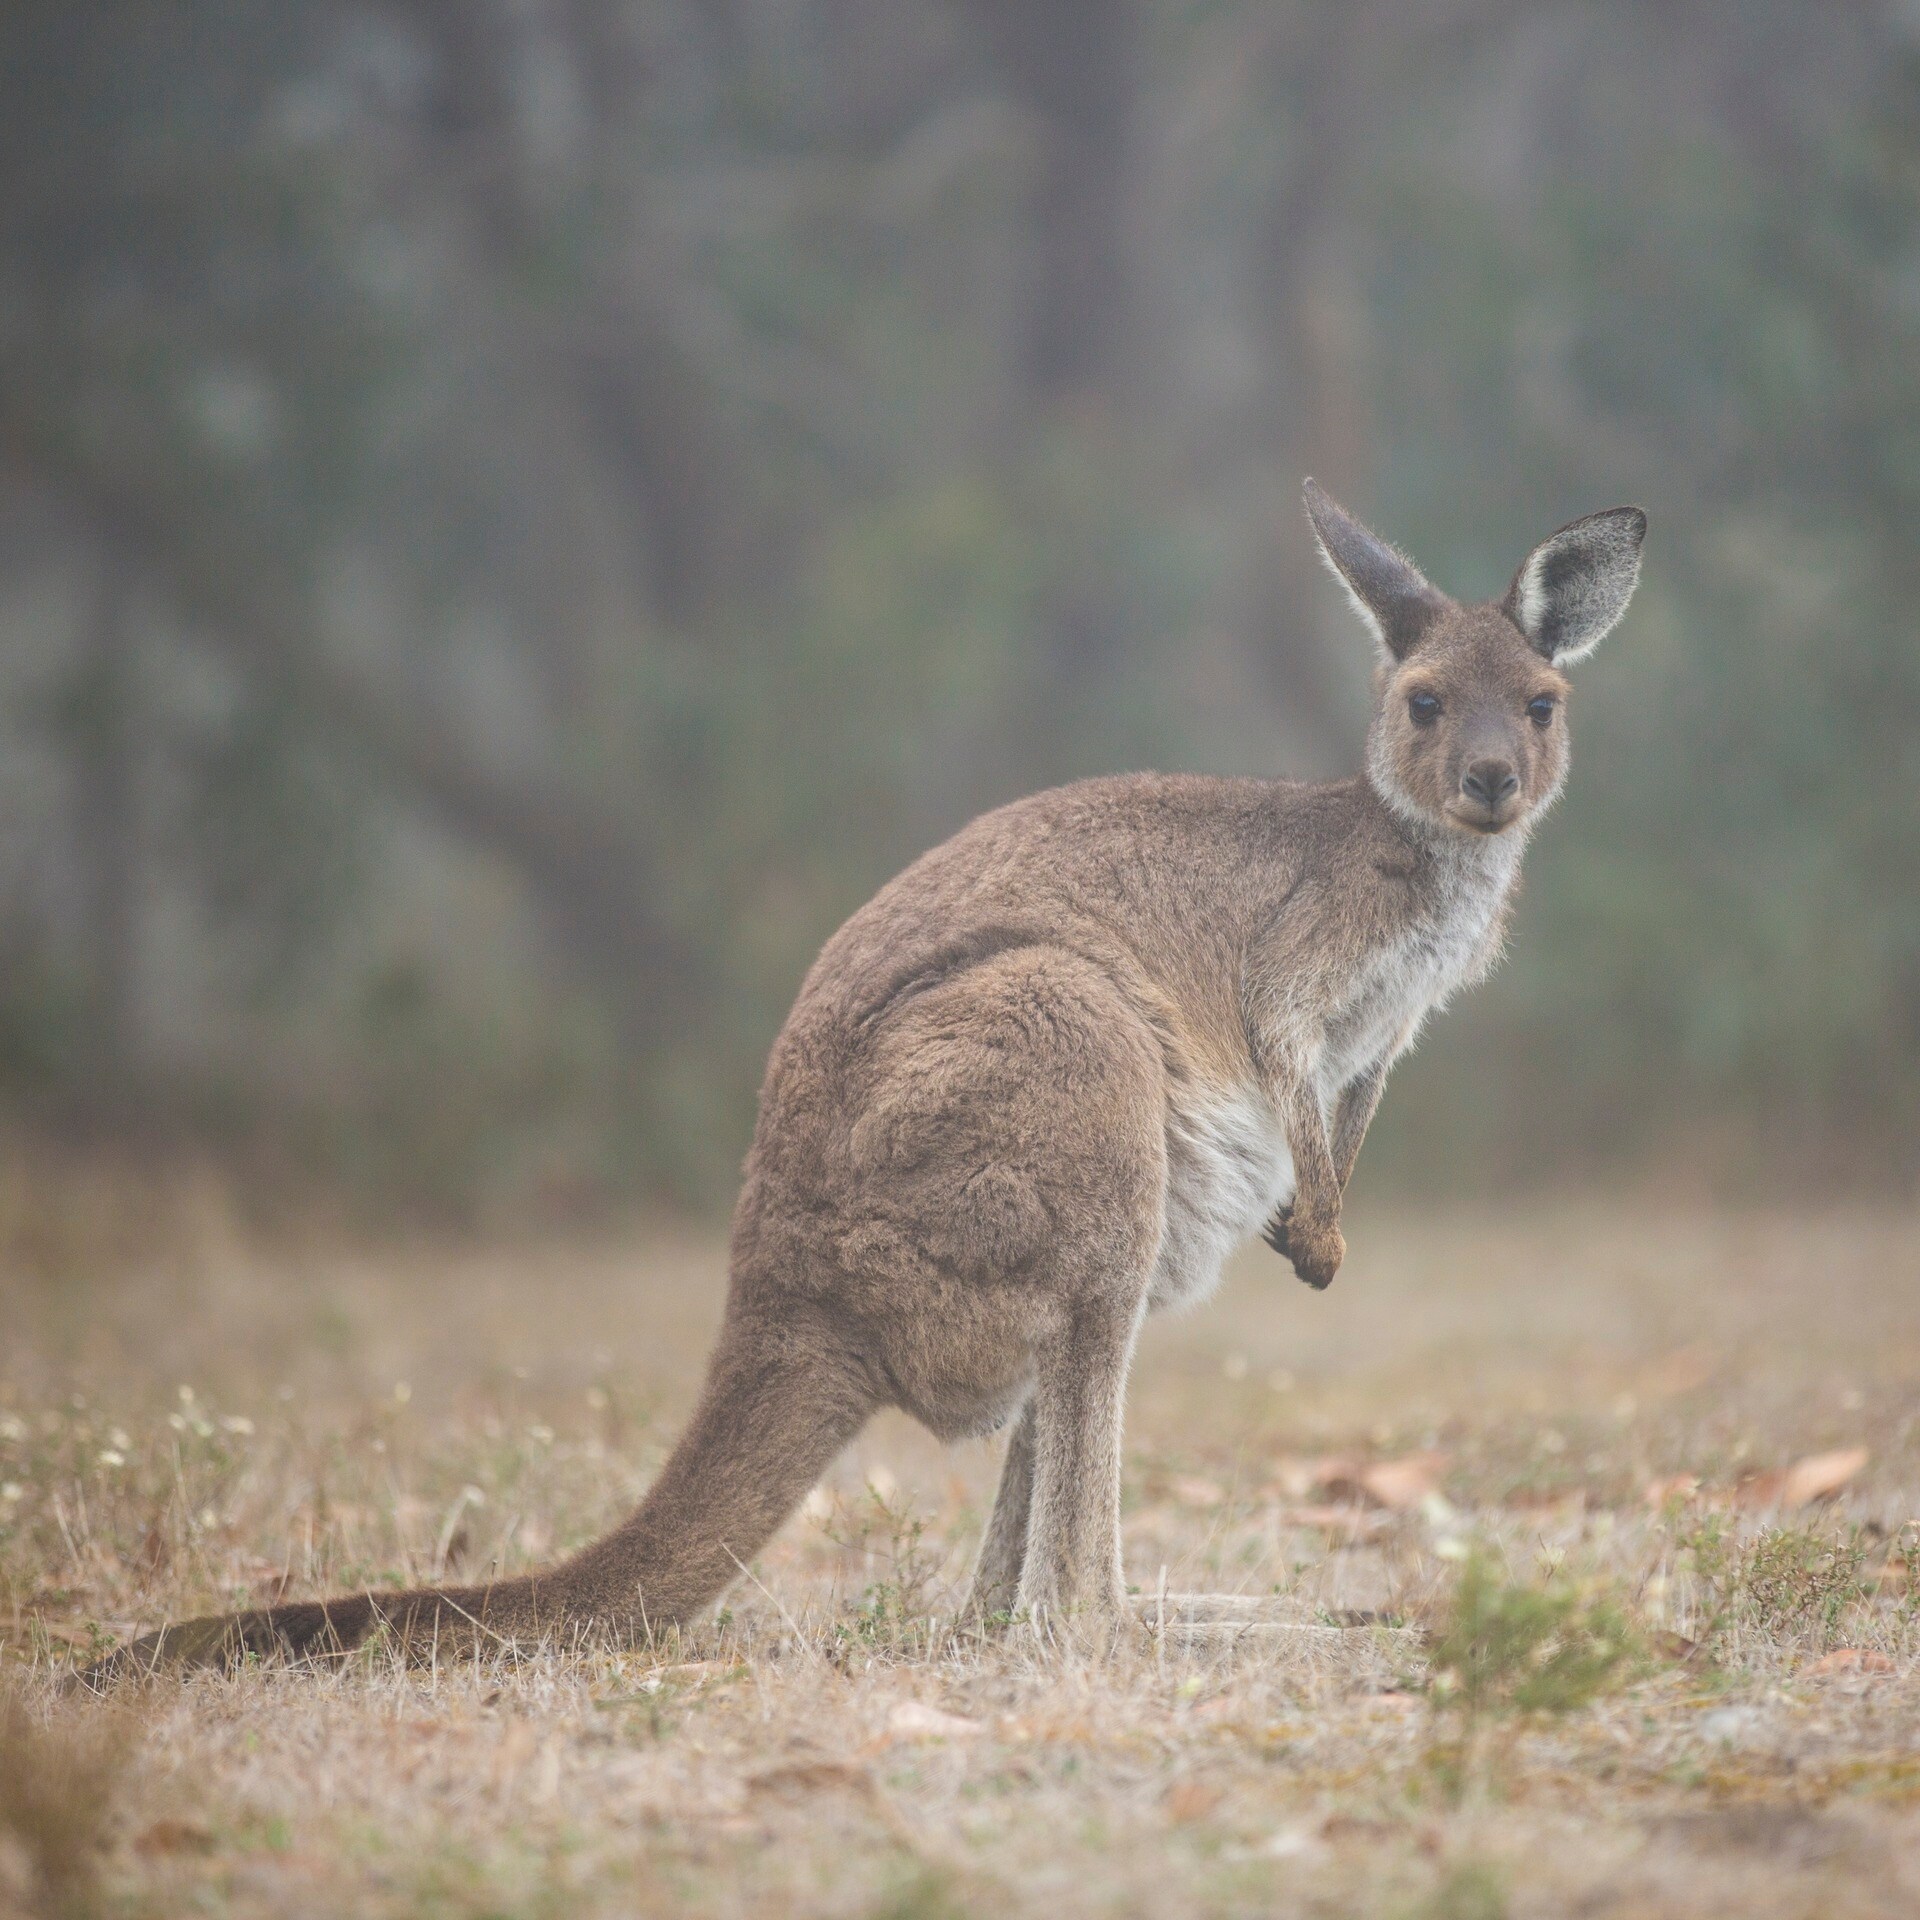 Kangaroo in the wild © Tourism Australia